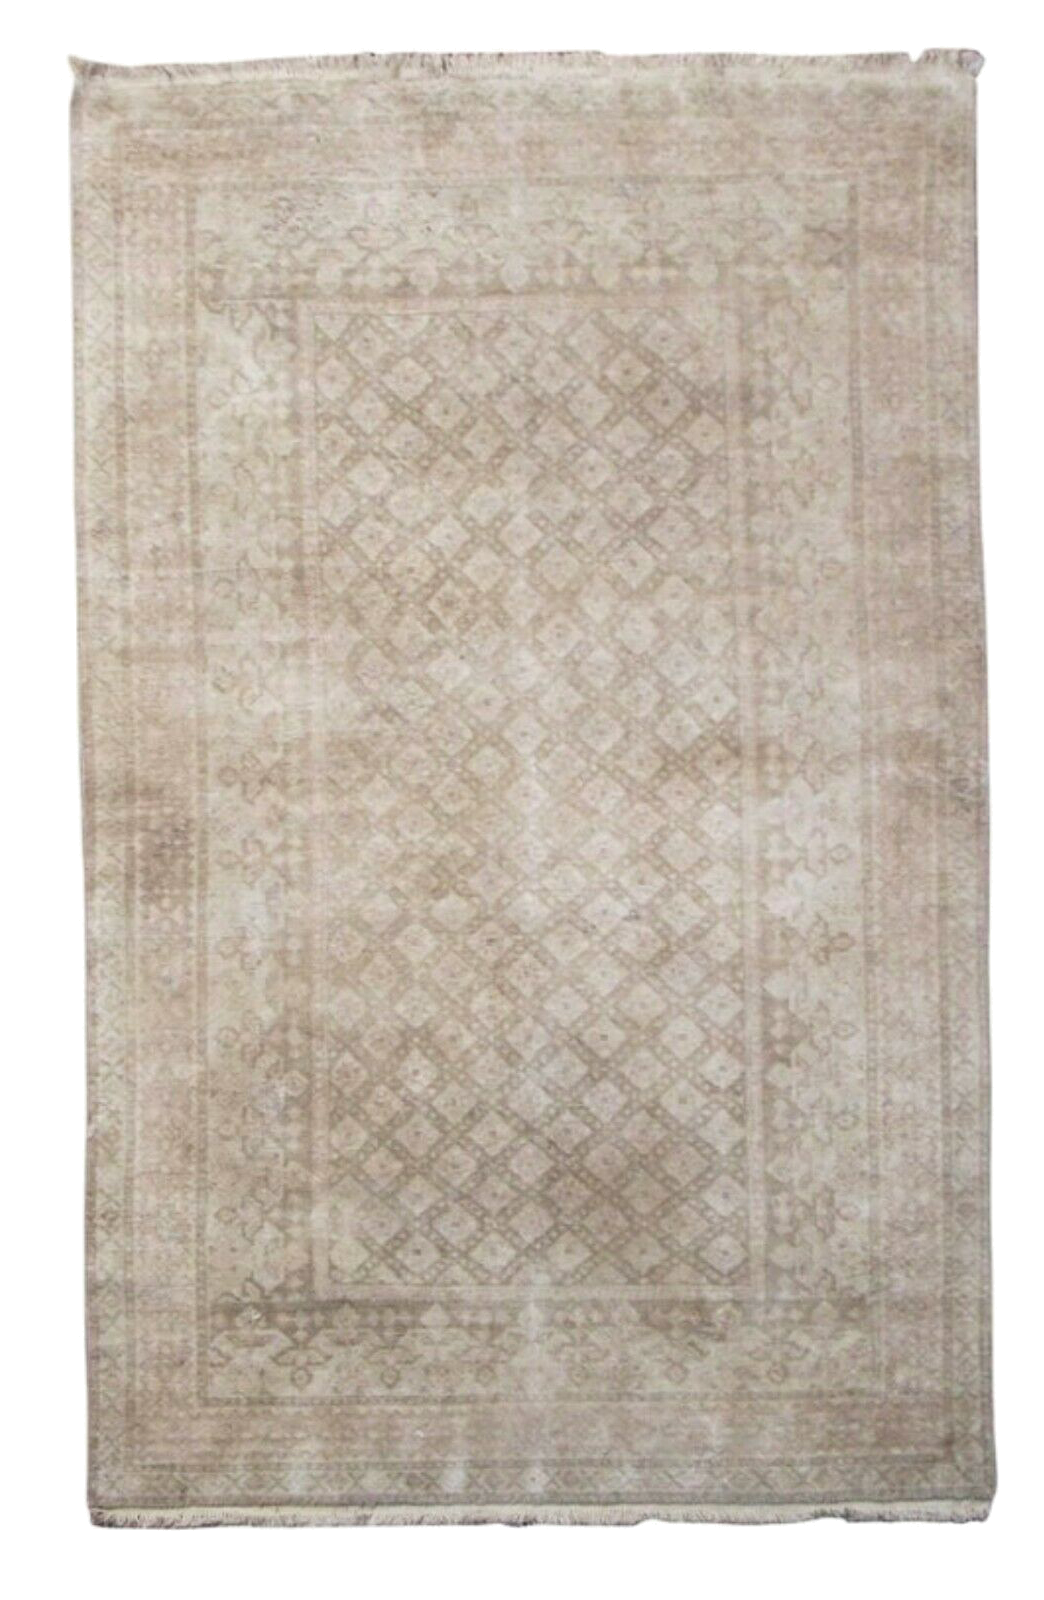 4X7 Antique Indian Cotton Agra Rug, circa 1920